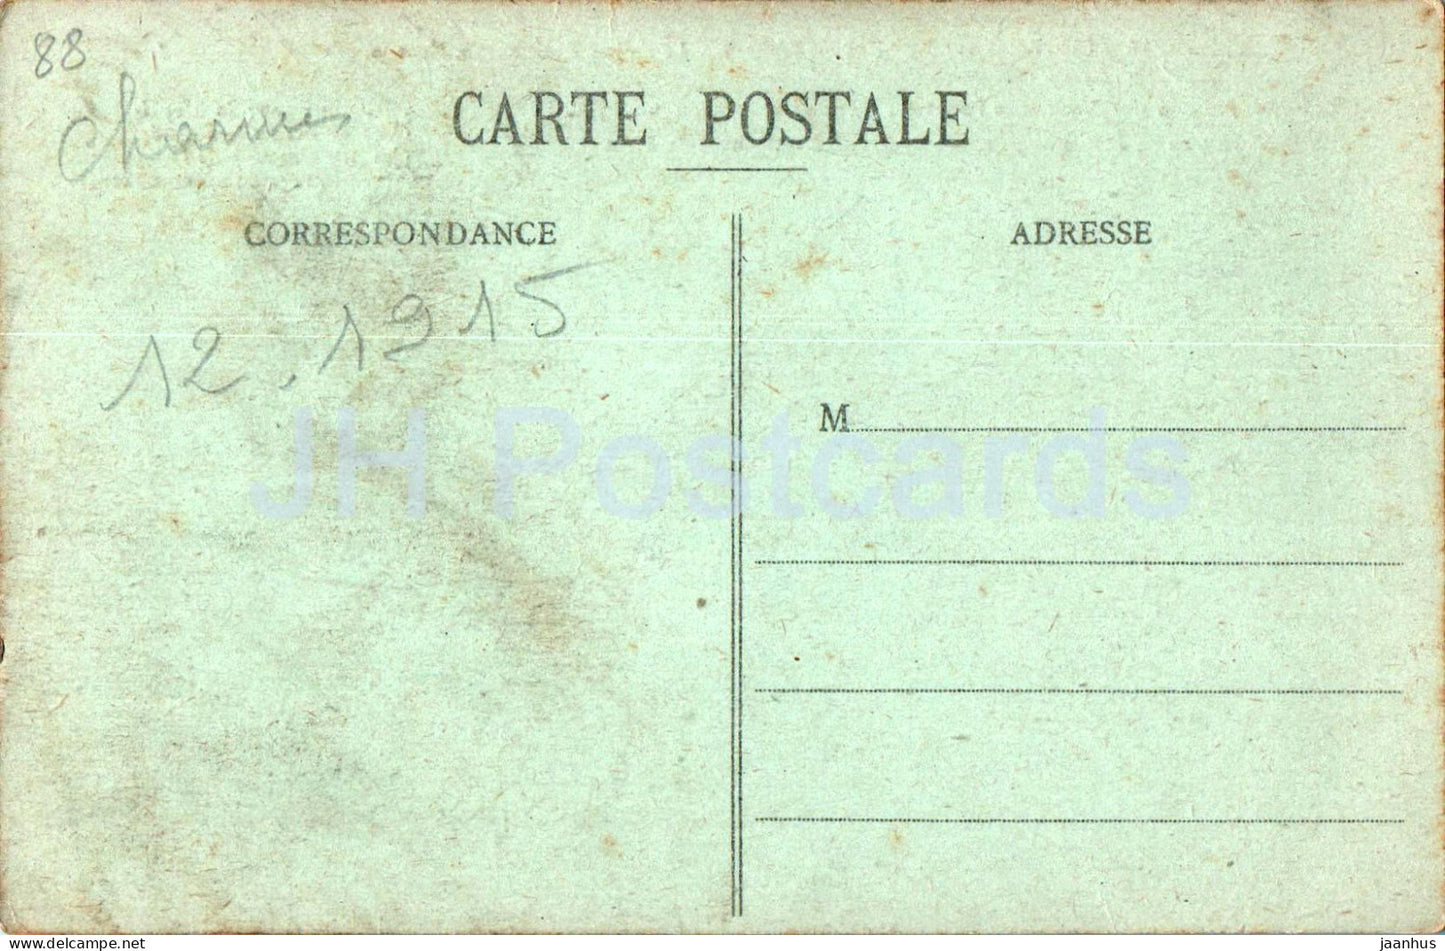 Charmes sur Moselle - Le Grand Pont sur la Moselle - Brücke - 16 - alte Postkarte - 1915 - Frankreich - gebraucht 